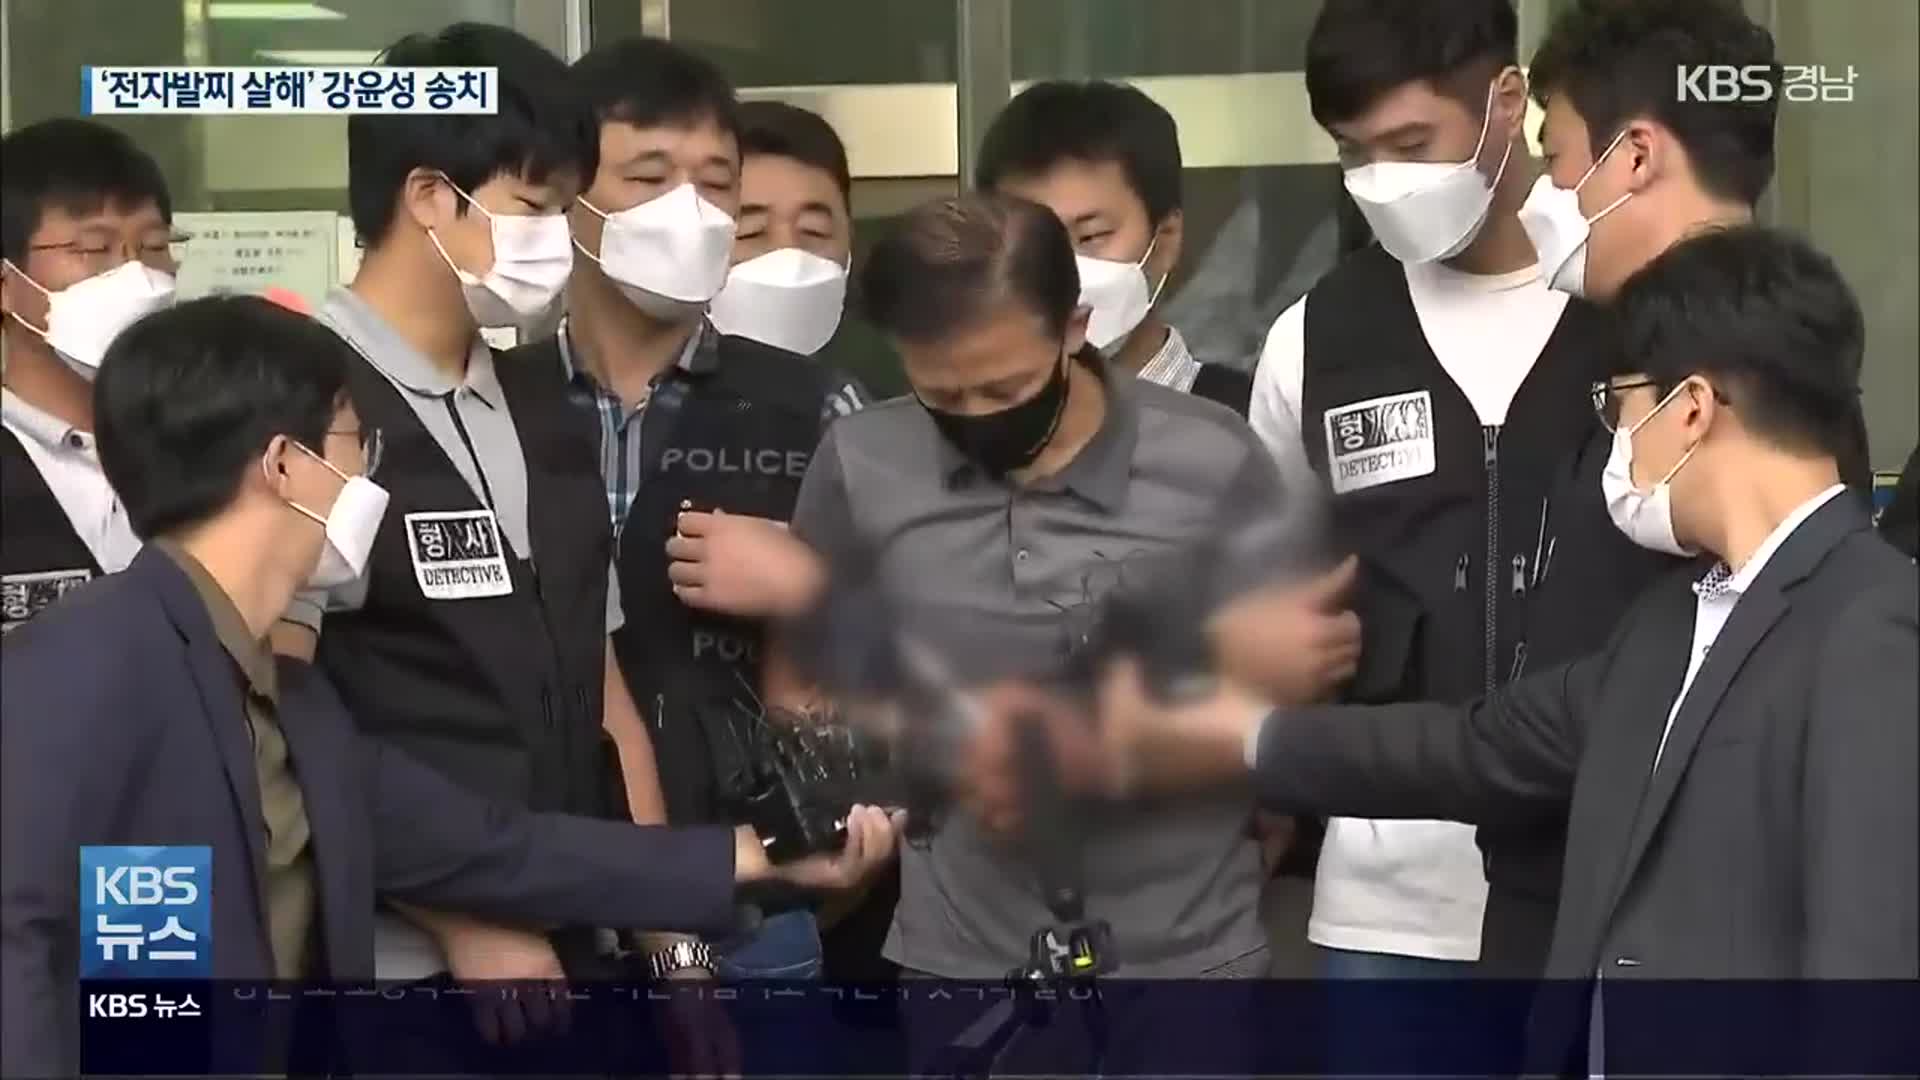 ‘전자발찌 훼손·살인’ 강윤성 검찰 송치…“피해자께 죄송하다”